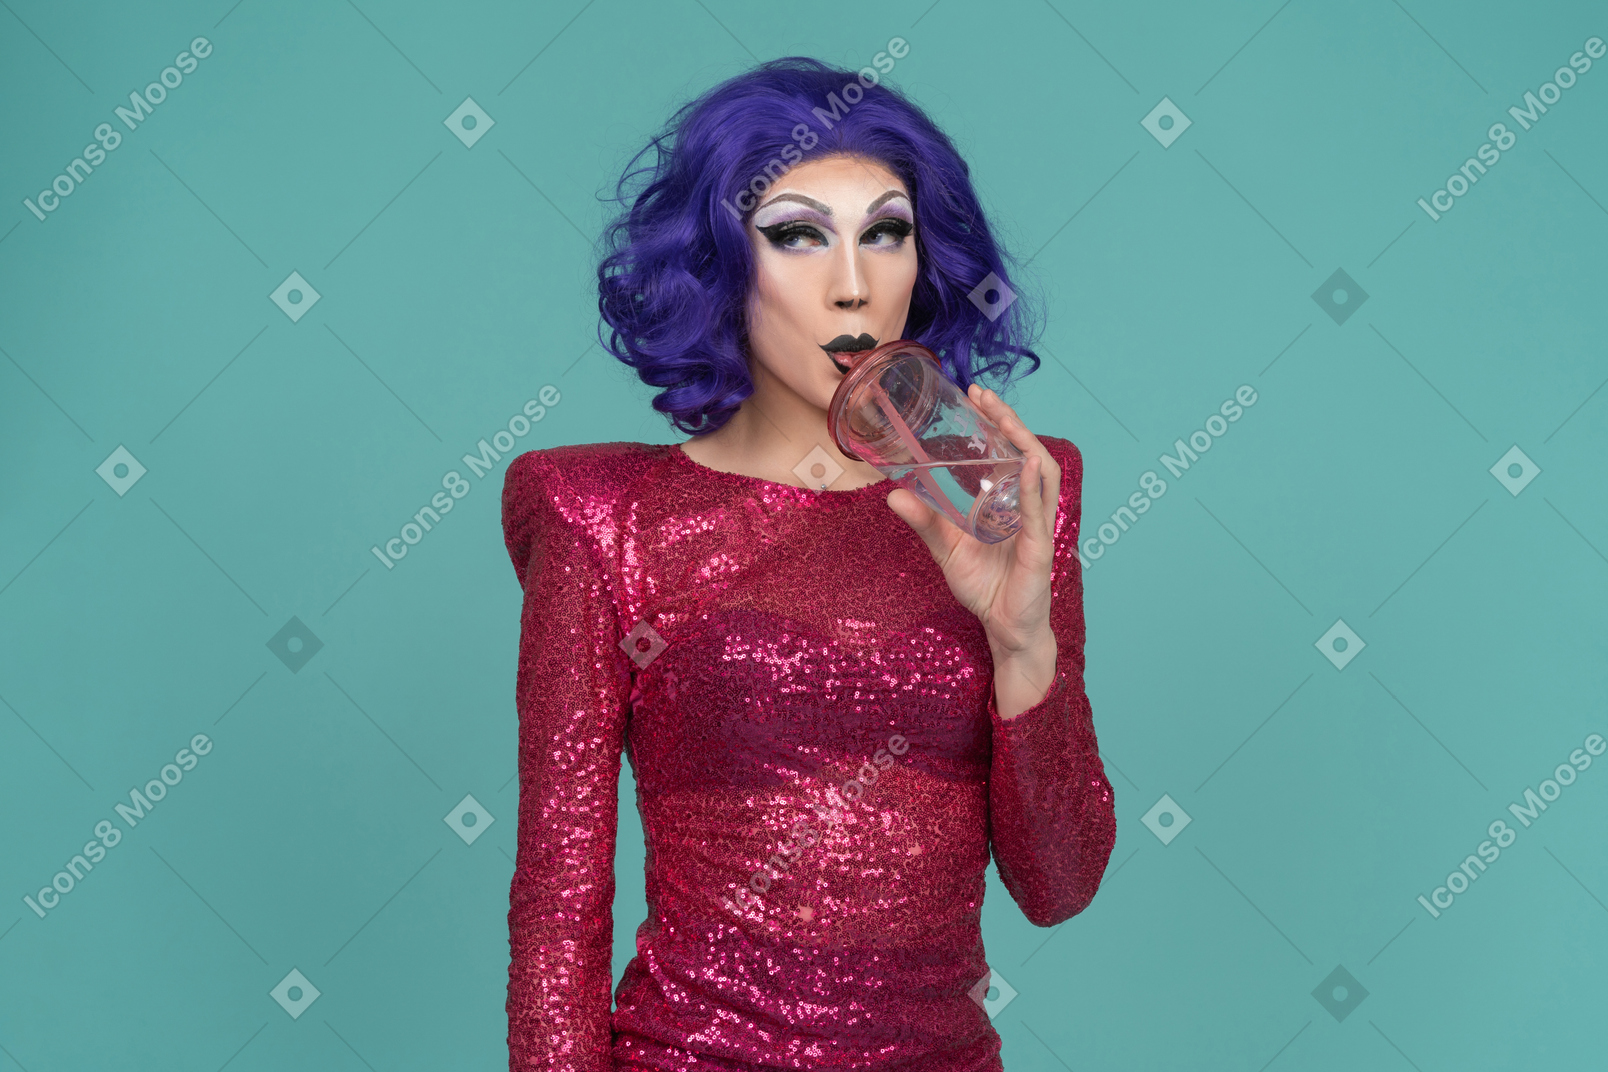 Drag queen in abito rosa con paillettes che guarda di traverso mentre beve un drink